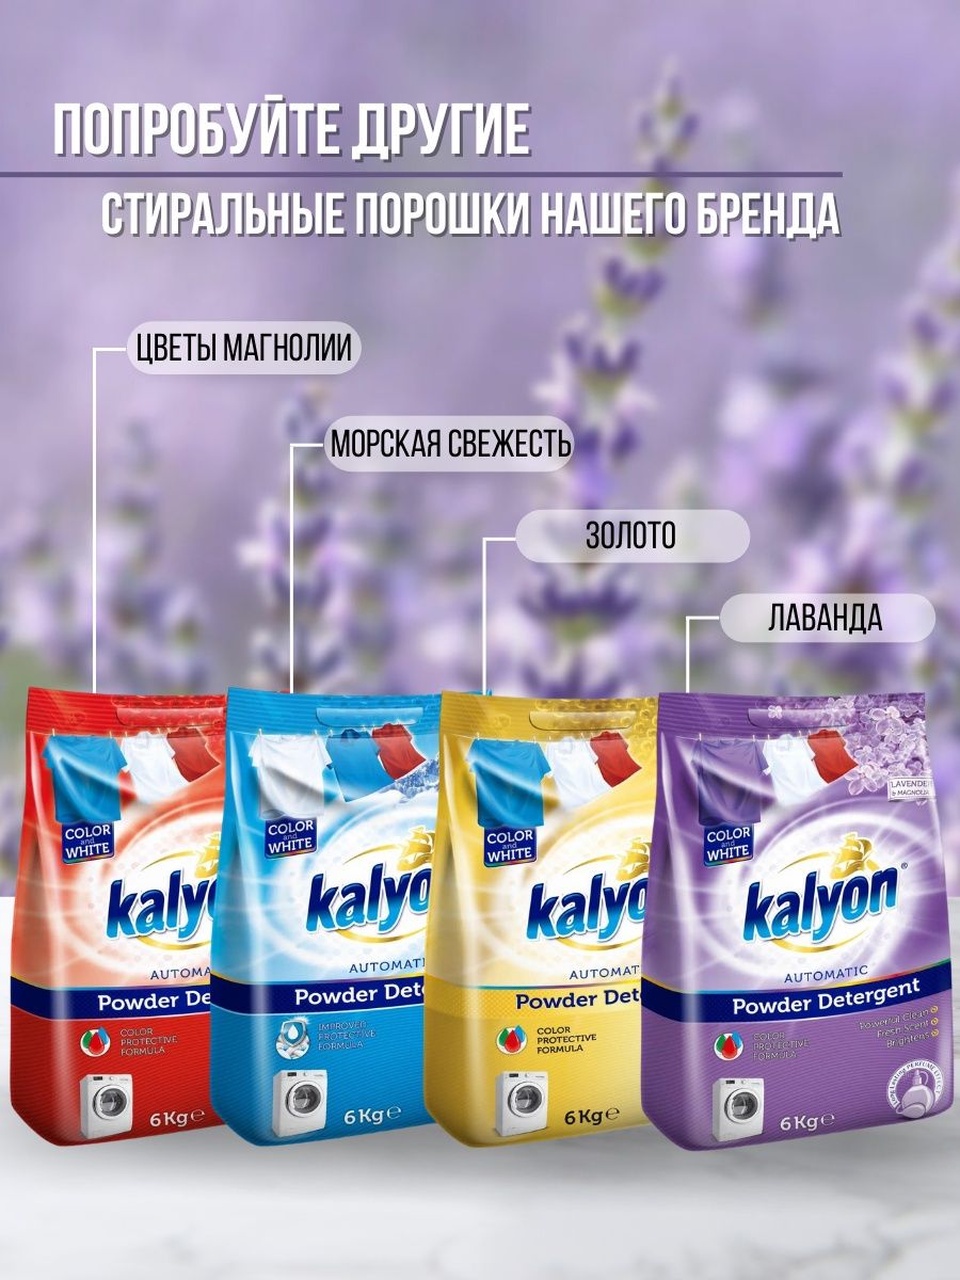 Стиральный порошок Kalyon Lovely для белого и цветного белья в ассортименте 6кг - 1 100 ₽, заказать онлайн.